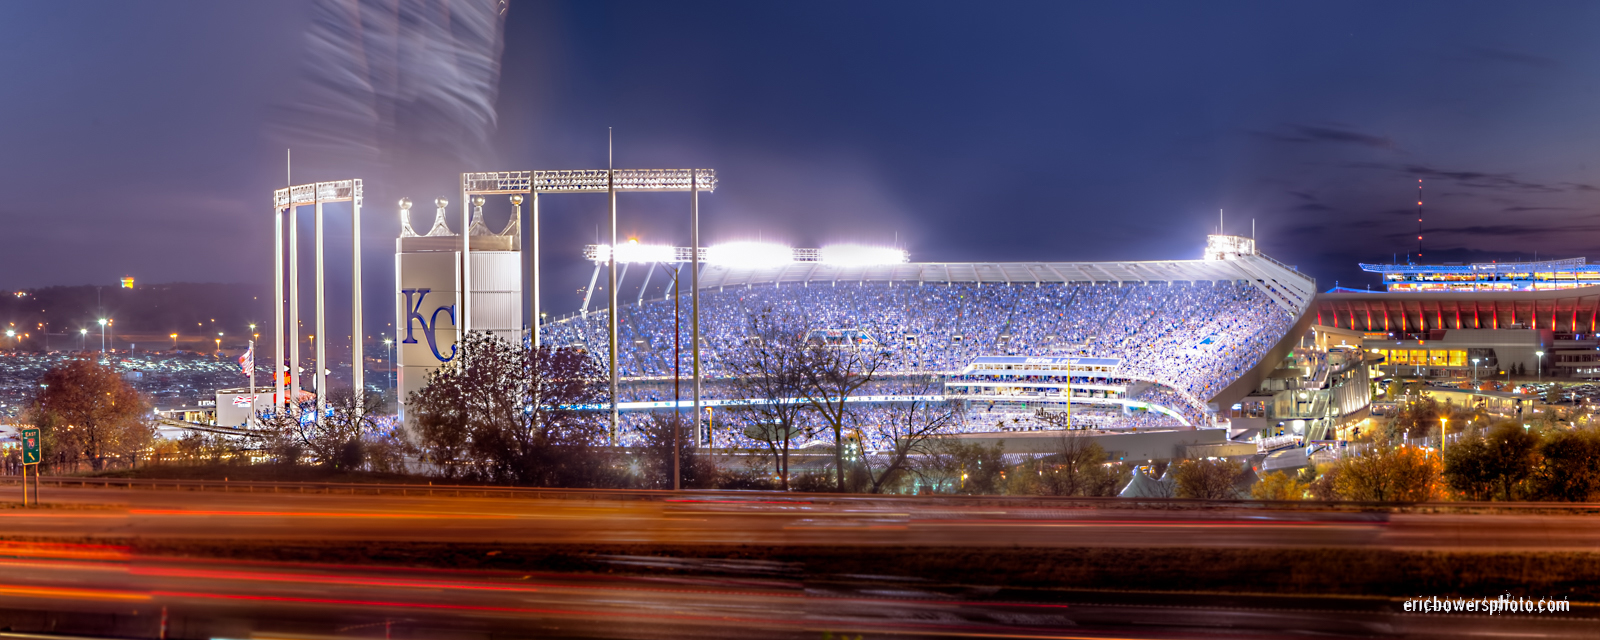 Kauffman Stadium Panorama Pic - KC Royals - Eric Bowers Photoblog